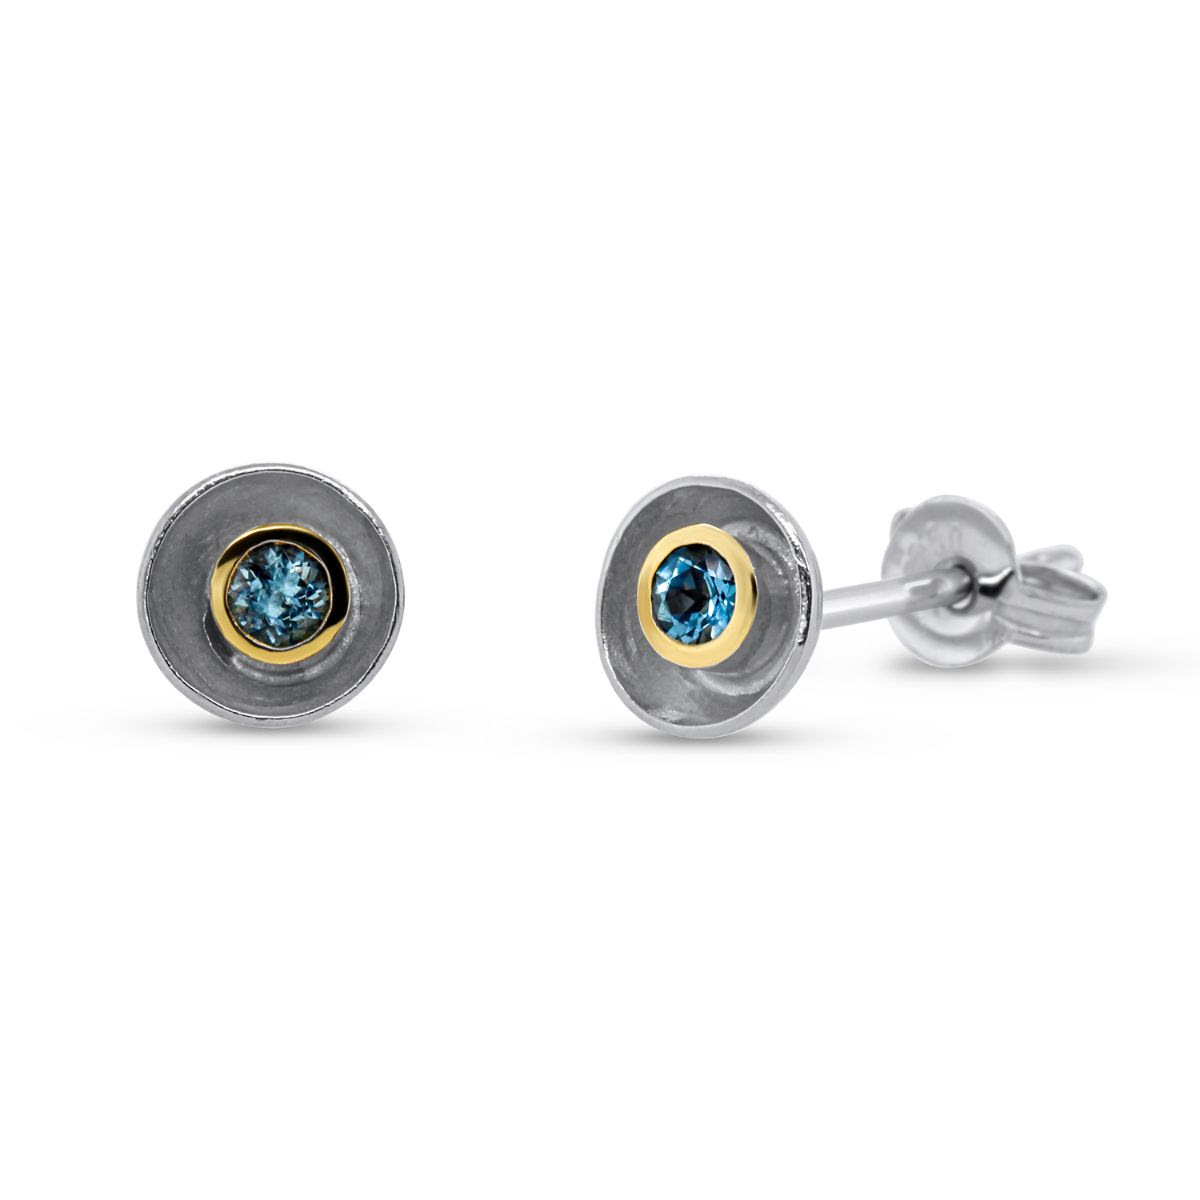 aquamarine acorn cup earrings by shimara carlow at designyard contemporary jewellery dublin ireland